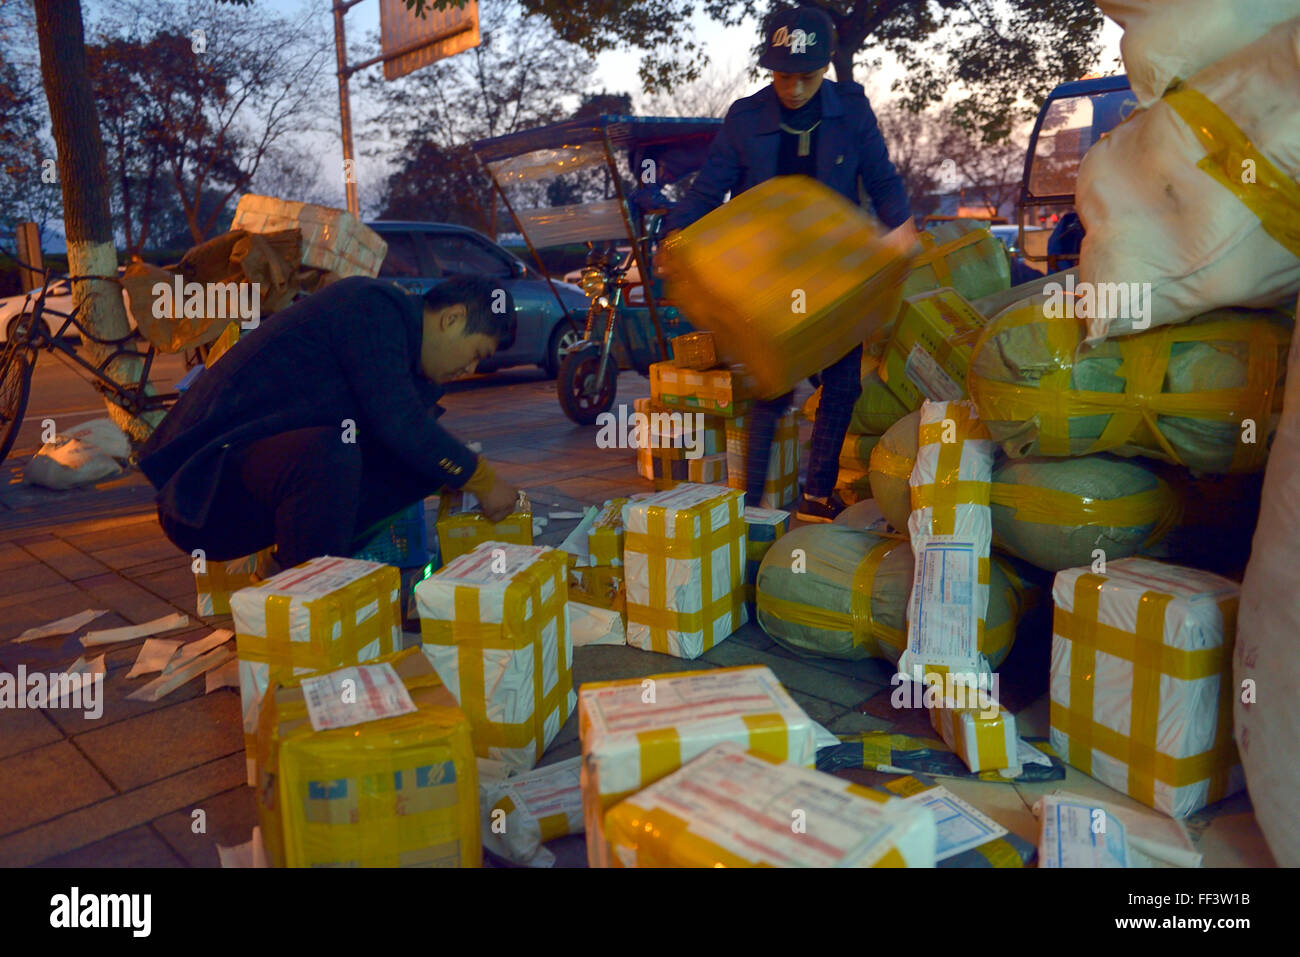 Les couriers de livraison chinois vérifier des forfaits à un magasin de vente Taobao ship supplies dans Ningo, Zhejiang, Chine. Banque D'Images